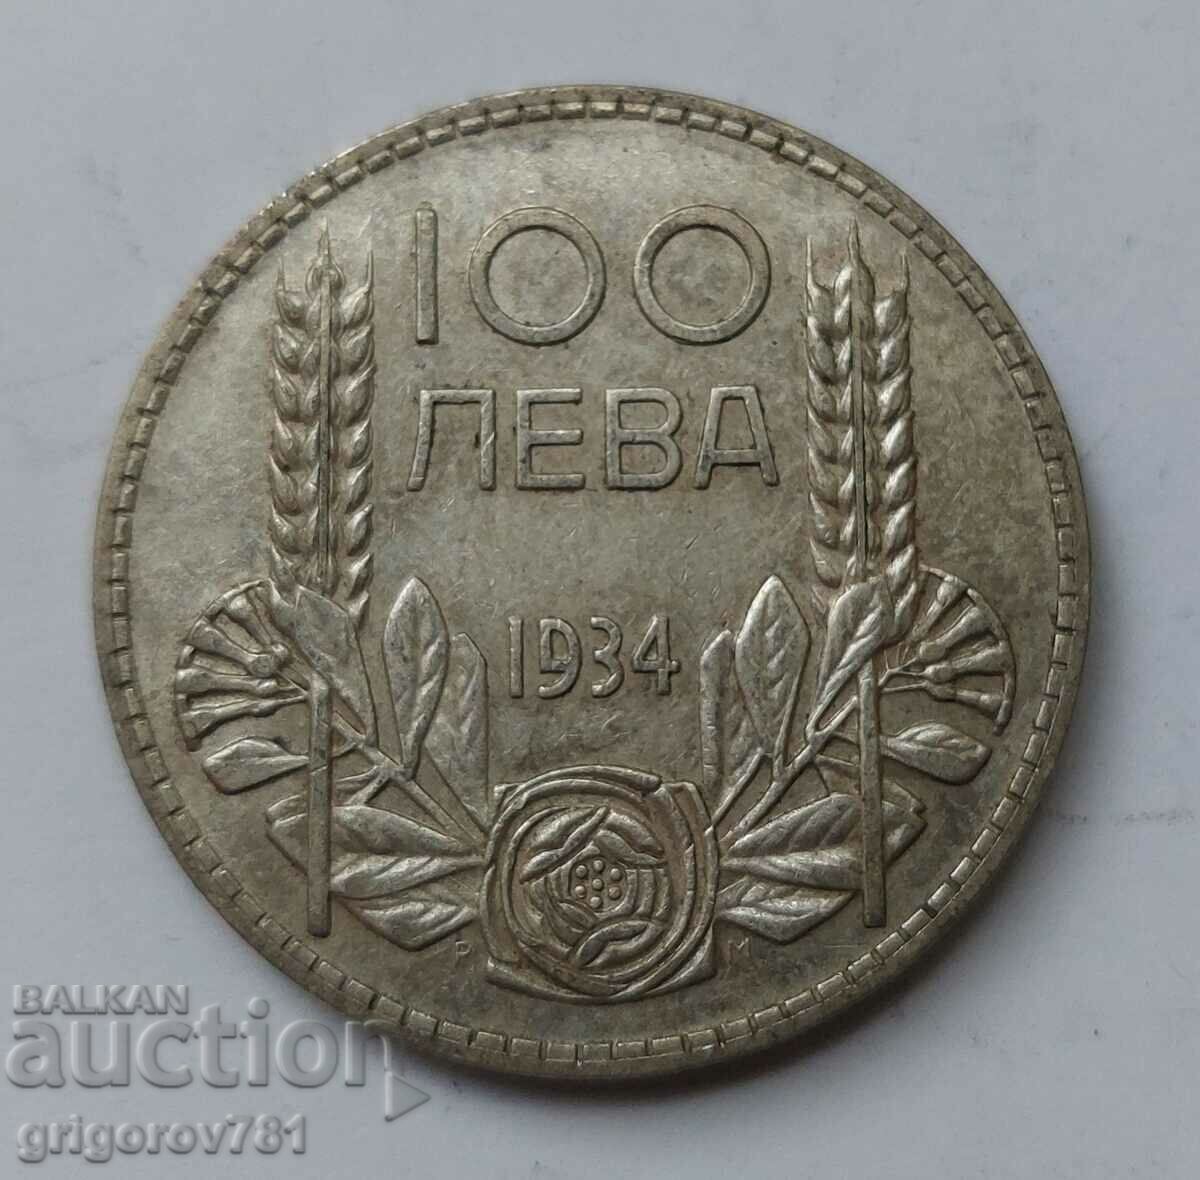 100 лева сребро България 1934 -  сребърна монета #27